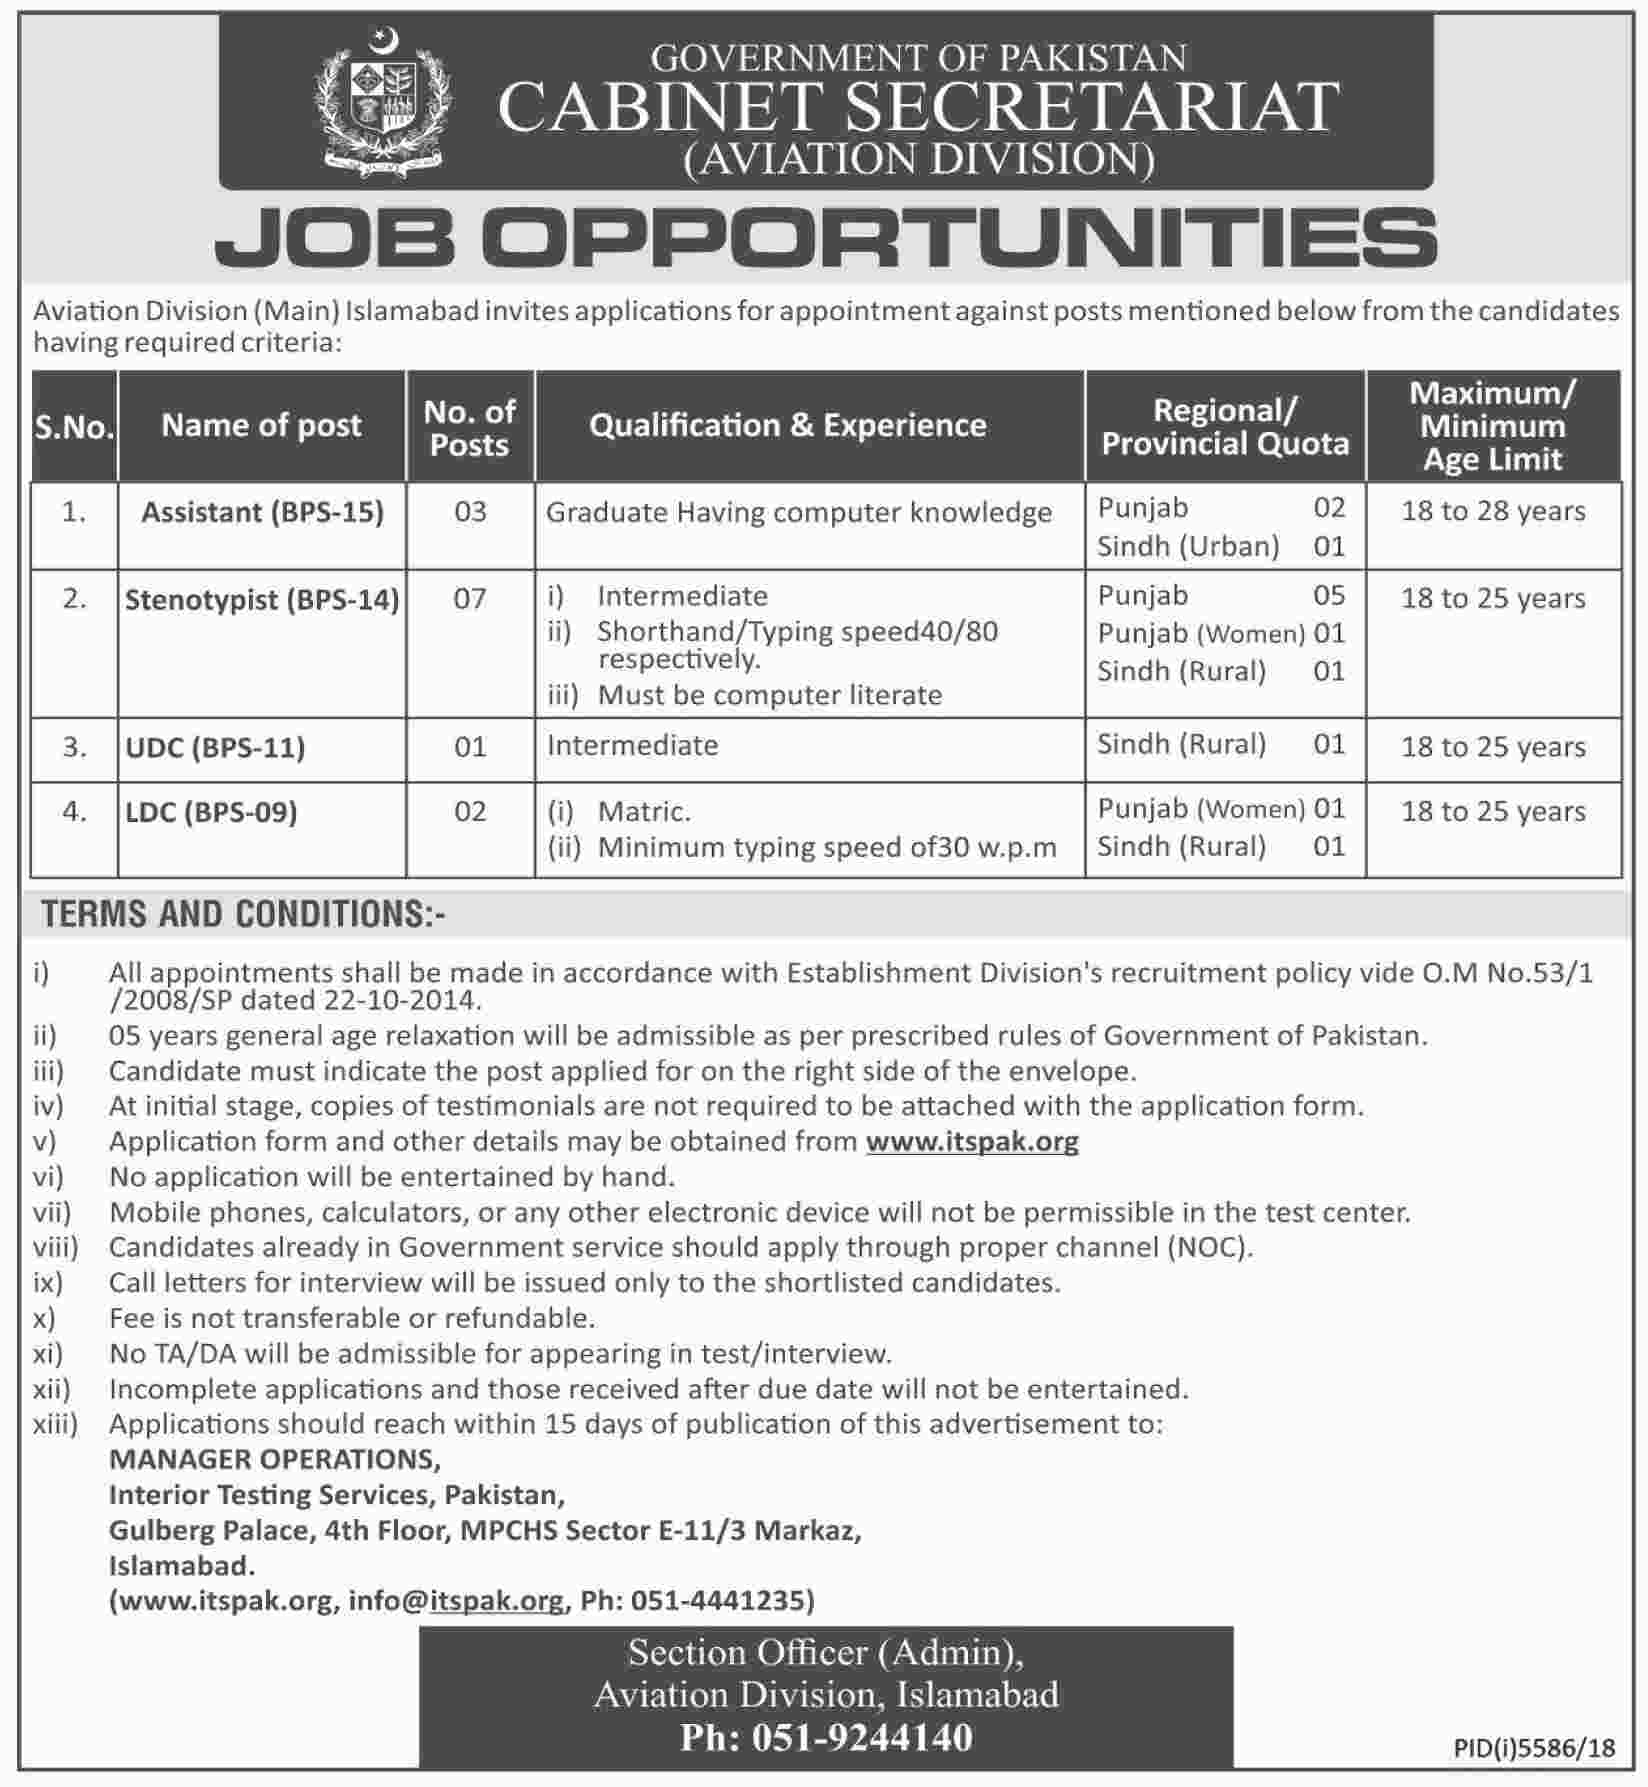 Cabinet Secretariat Govt of Pakistan jobs 2019